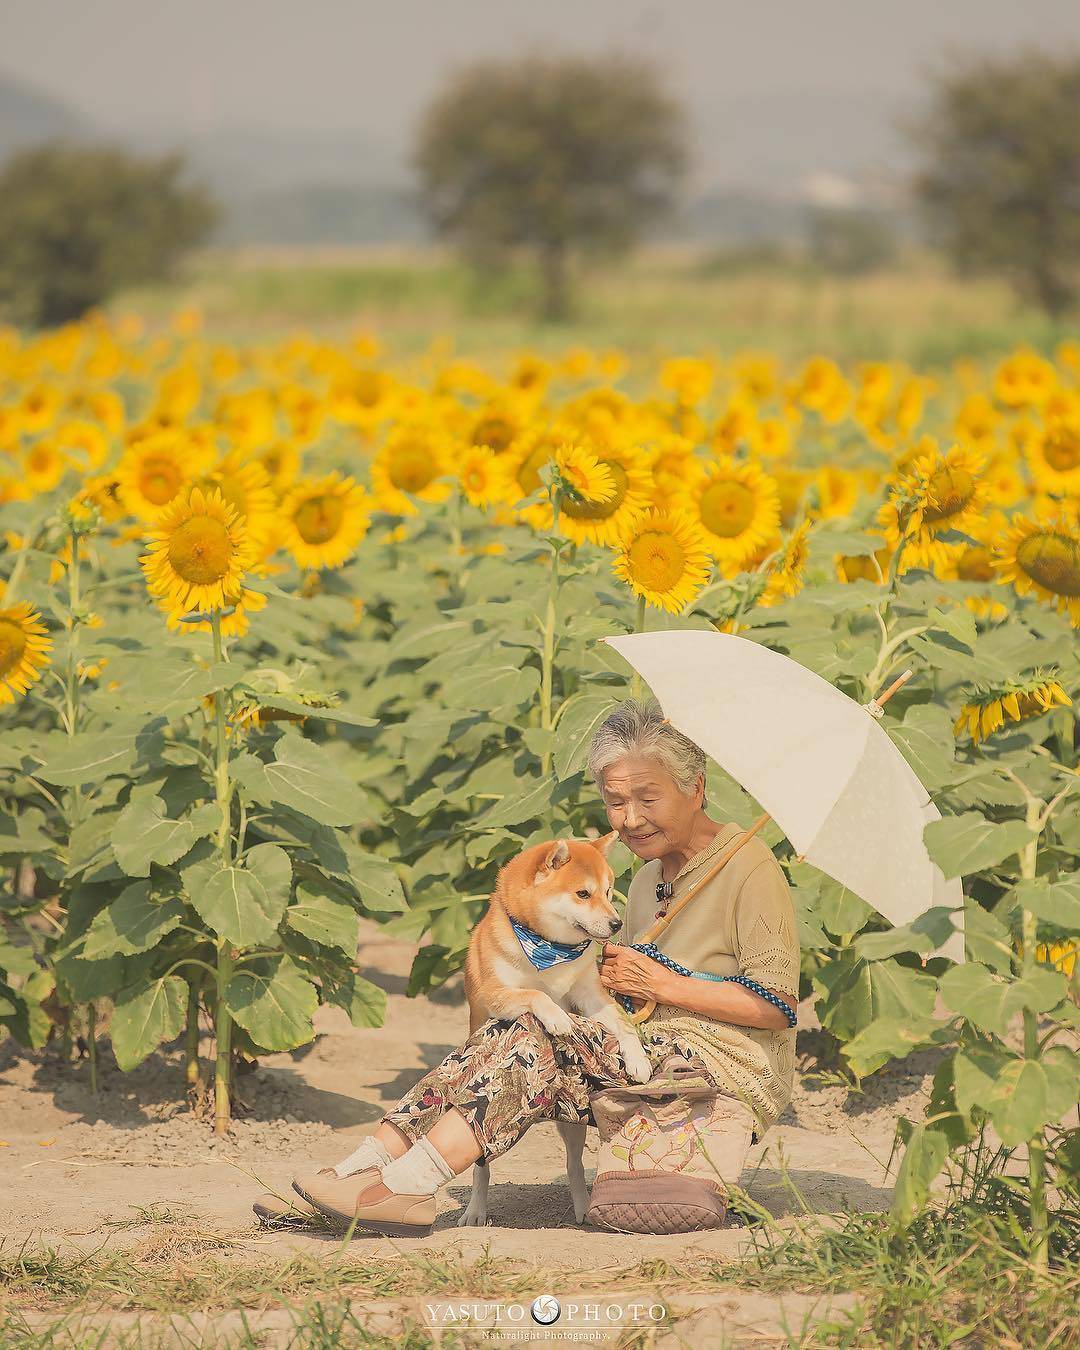 日本摄影师yasuto 镜头中奶奶与柴犬fuku的静谧时光,温暖而美好